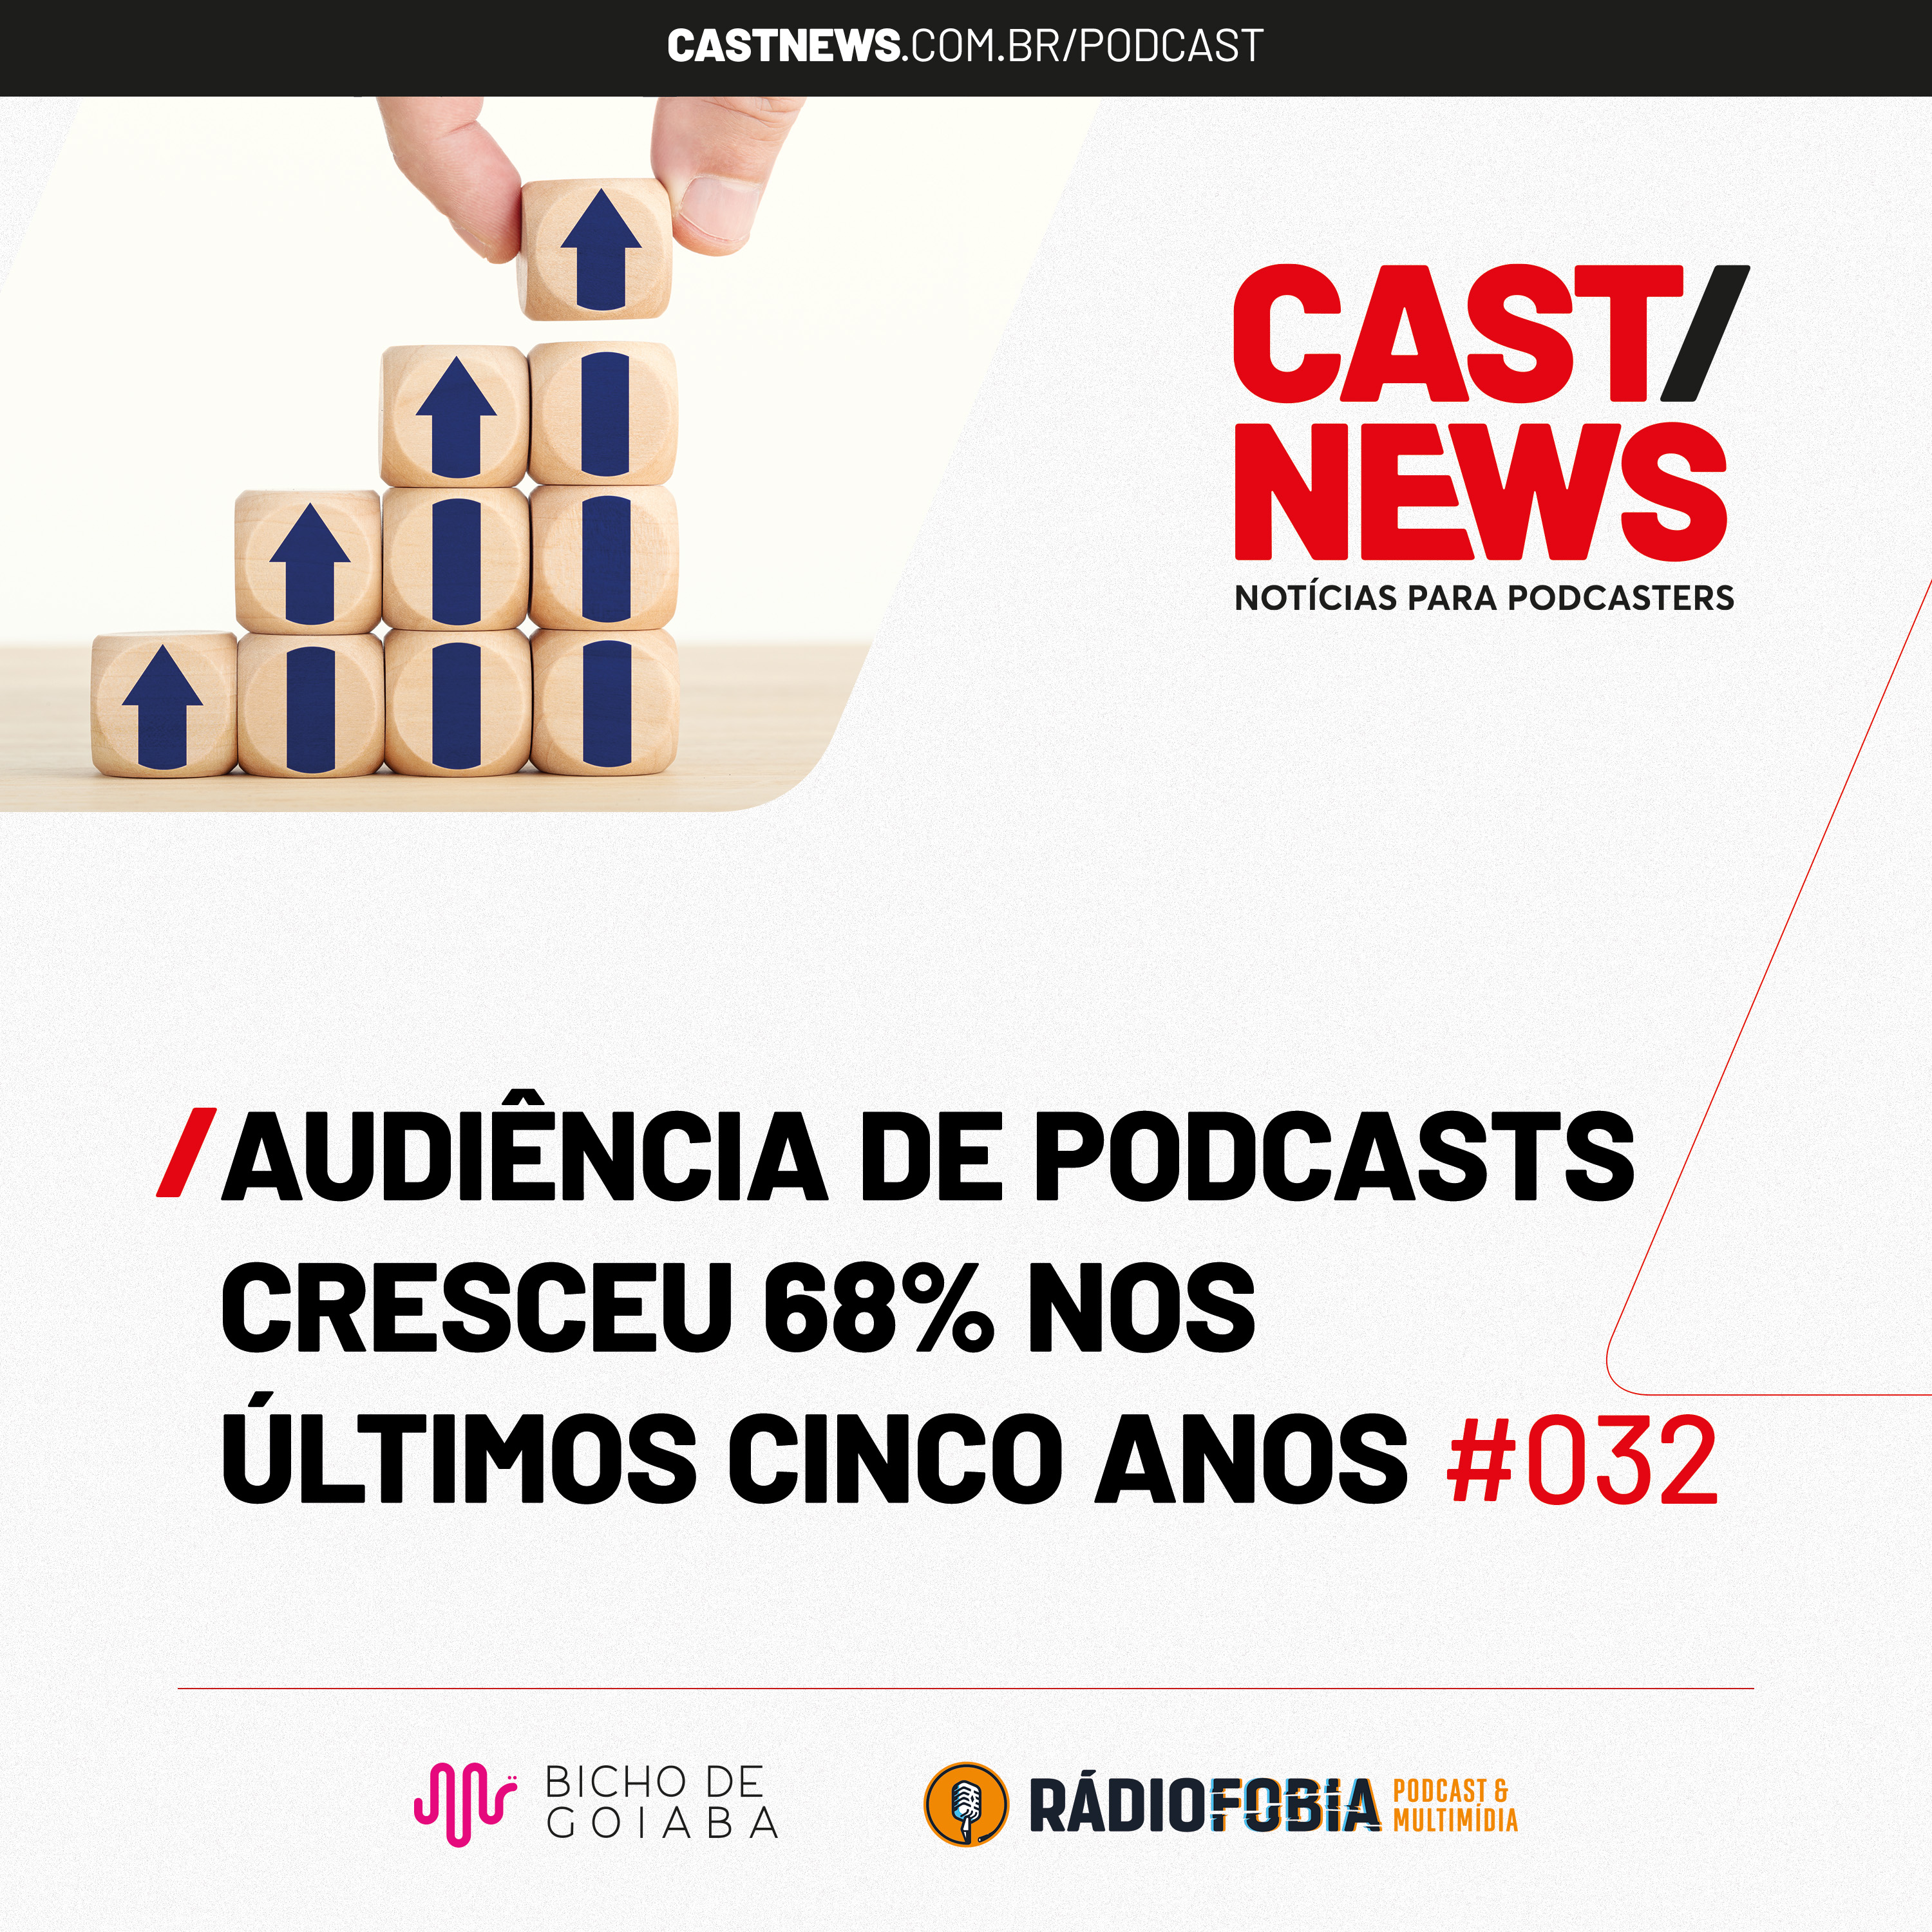 CASTNEWS #032 - Audiência de podcasts cresceu 68% nos últimos cinco anos